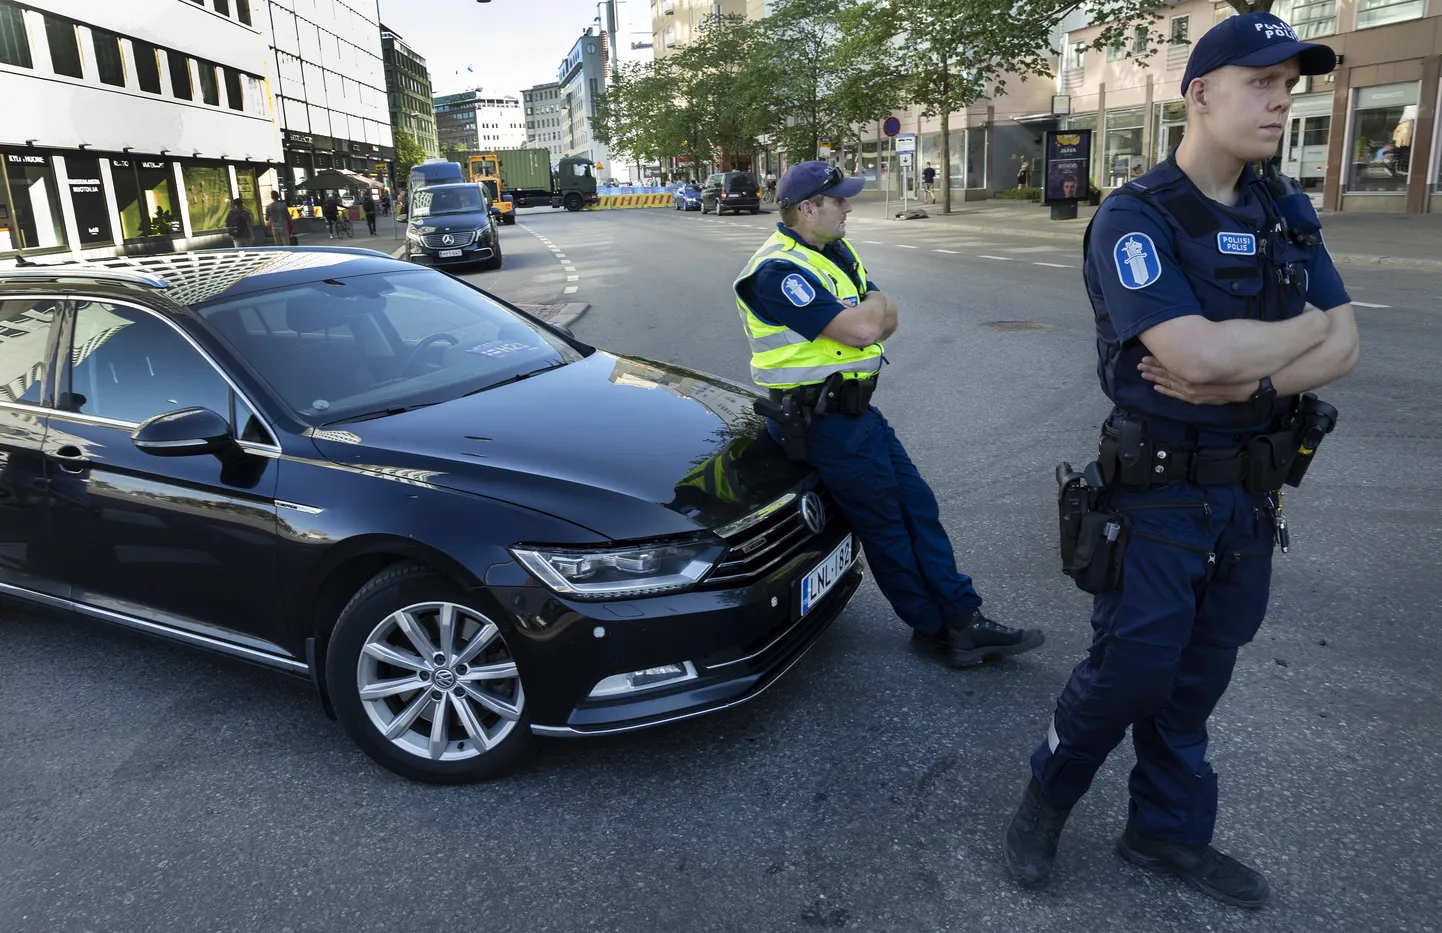 Soome politsei tööhoos. Pilt ei ole otseselt sündmusega seotud, vaid illustreerib seda.